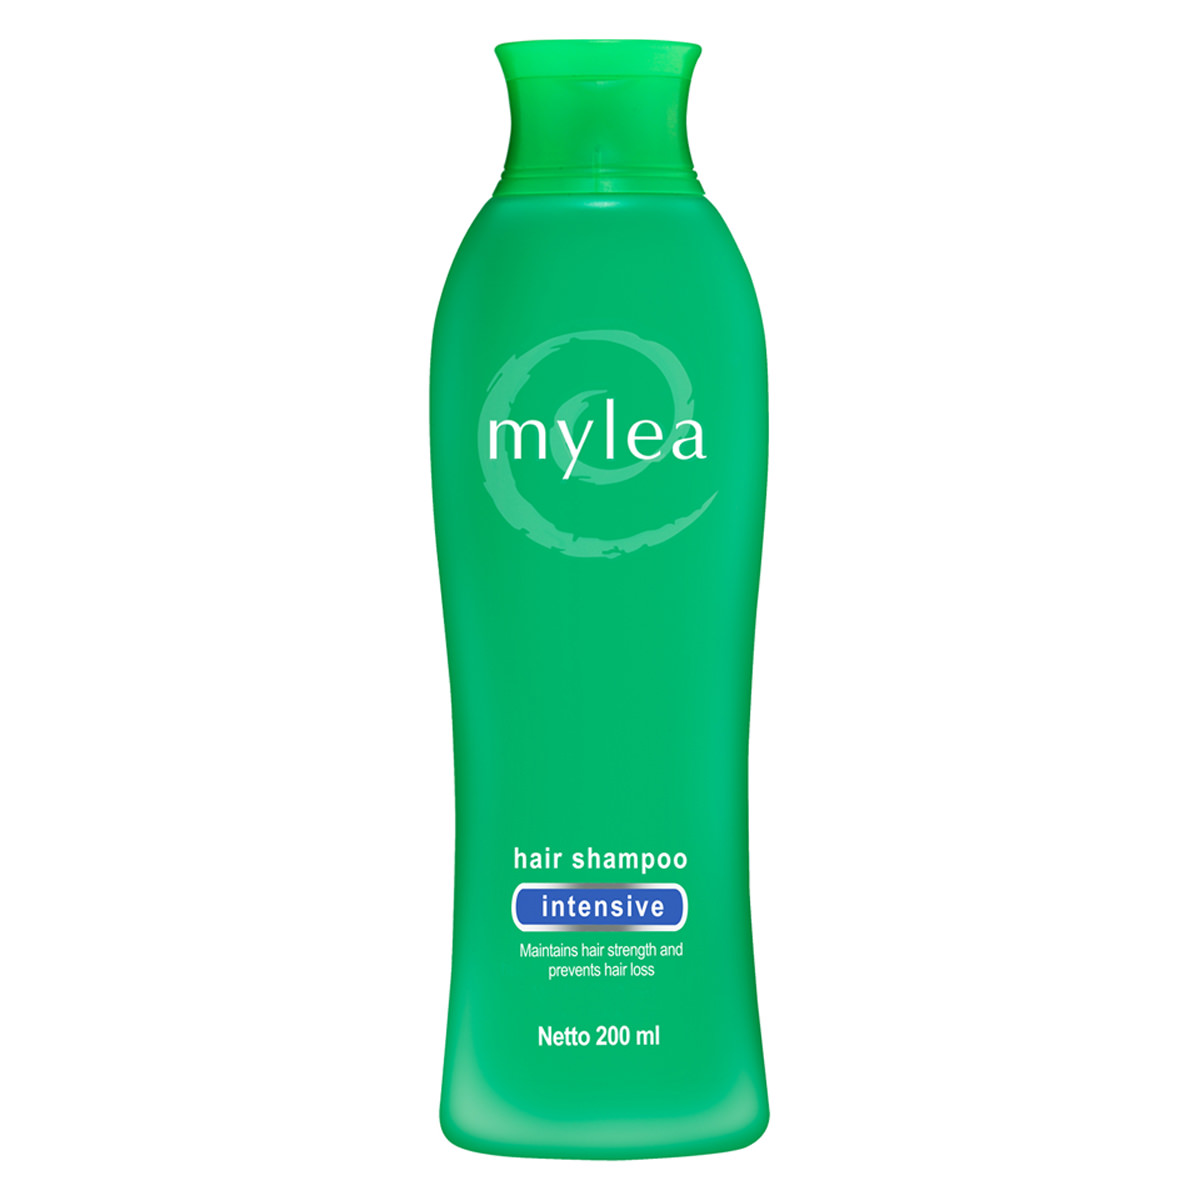 Mylea---Hair-Shampoo-Intensive-(200-ml)-sfw(1)